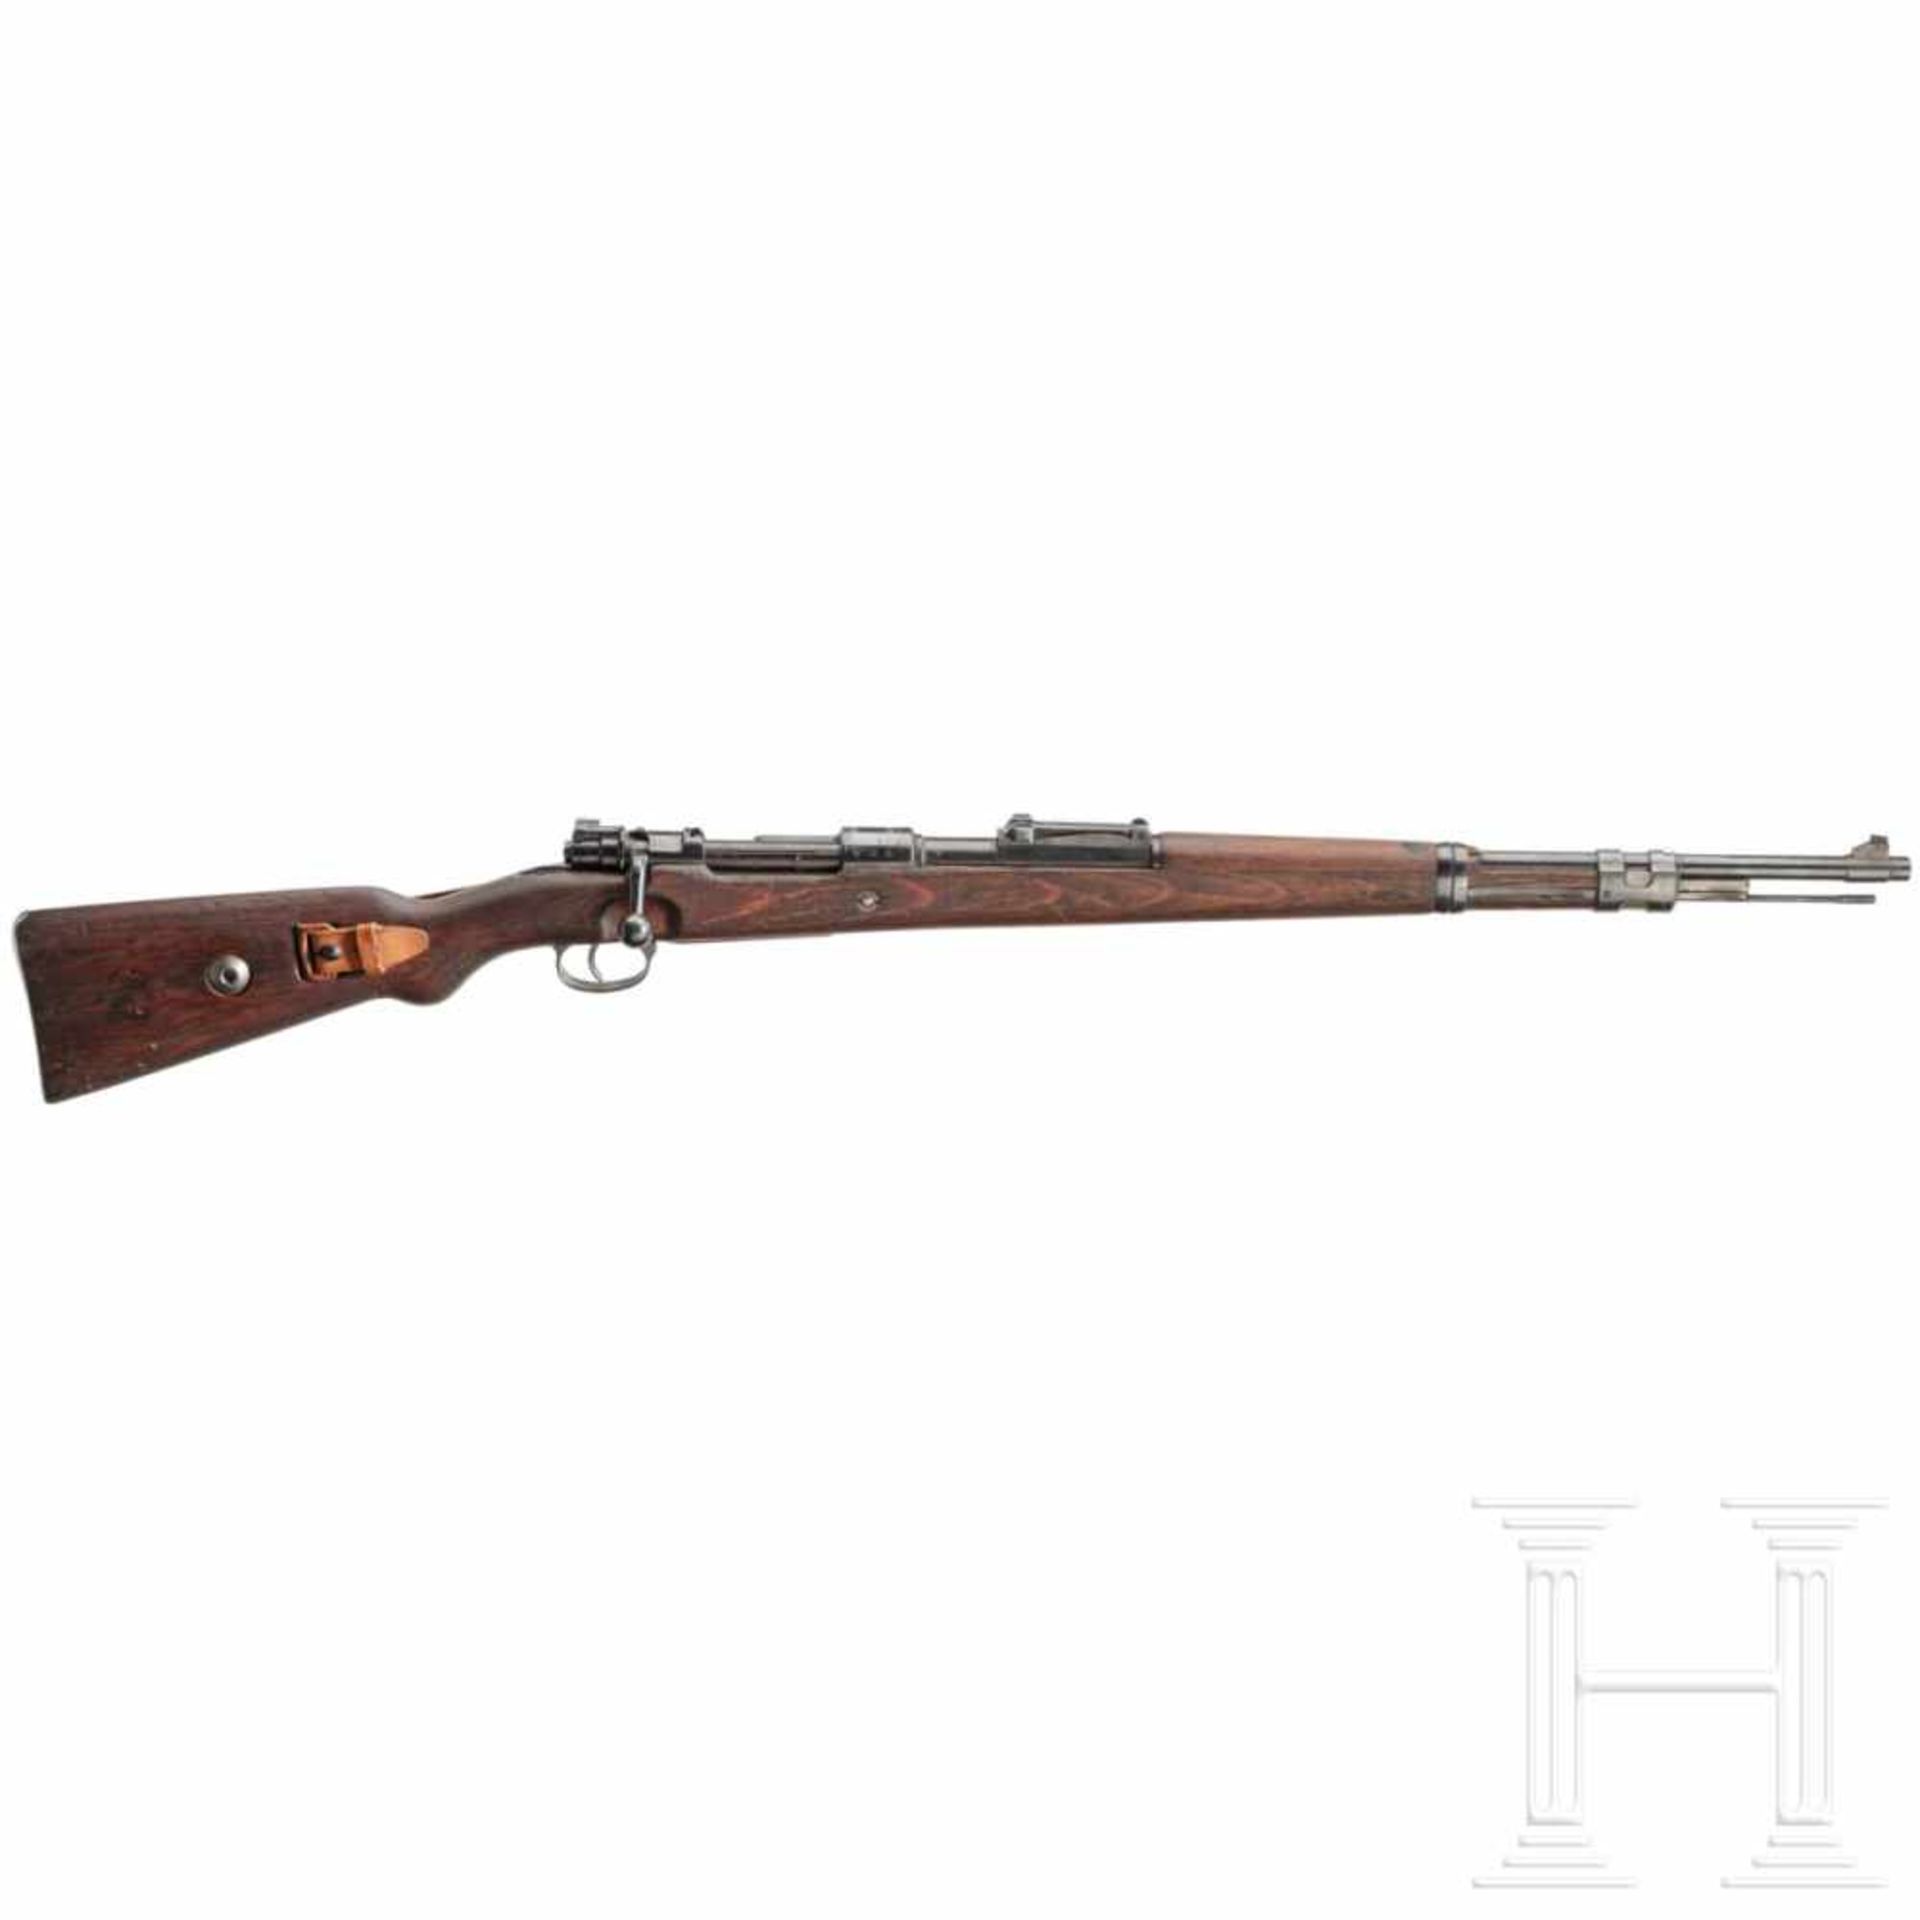 A carbine 98 k, code "147 - 1938"Kal. 8x57 IS, Nr. 2492m, nummerngleich inkl. Schrauben bis auf